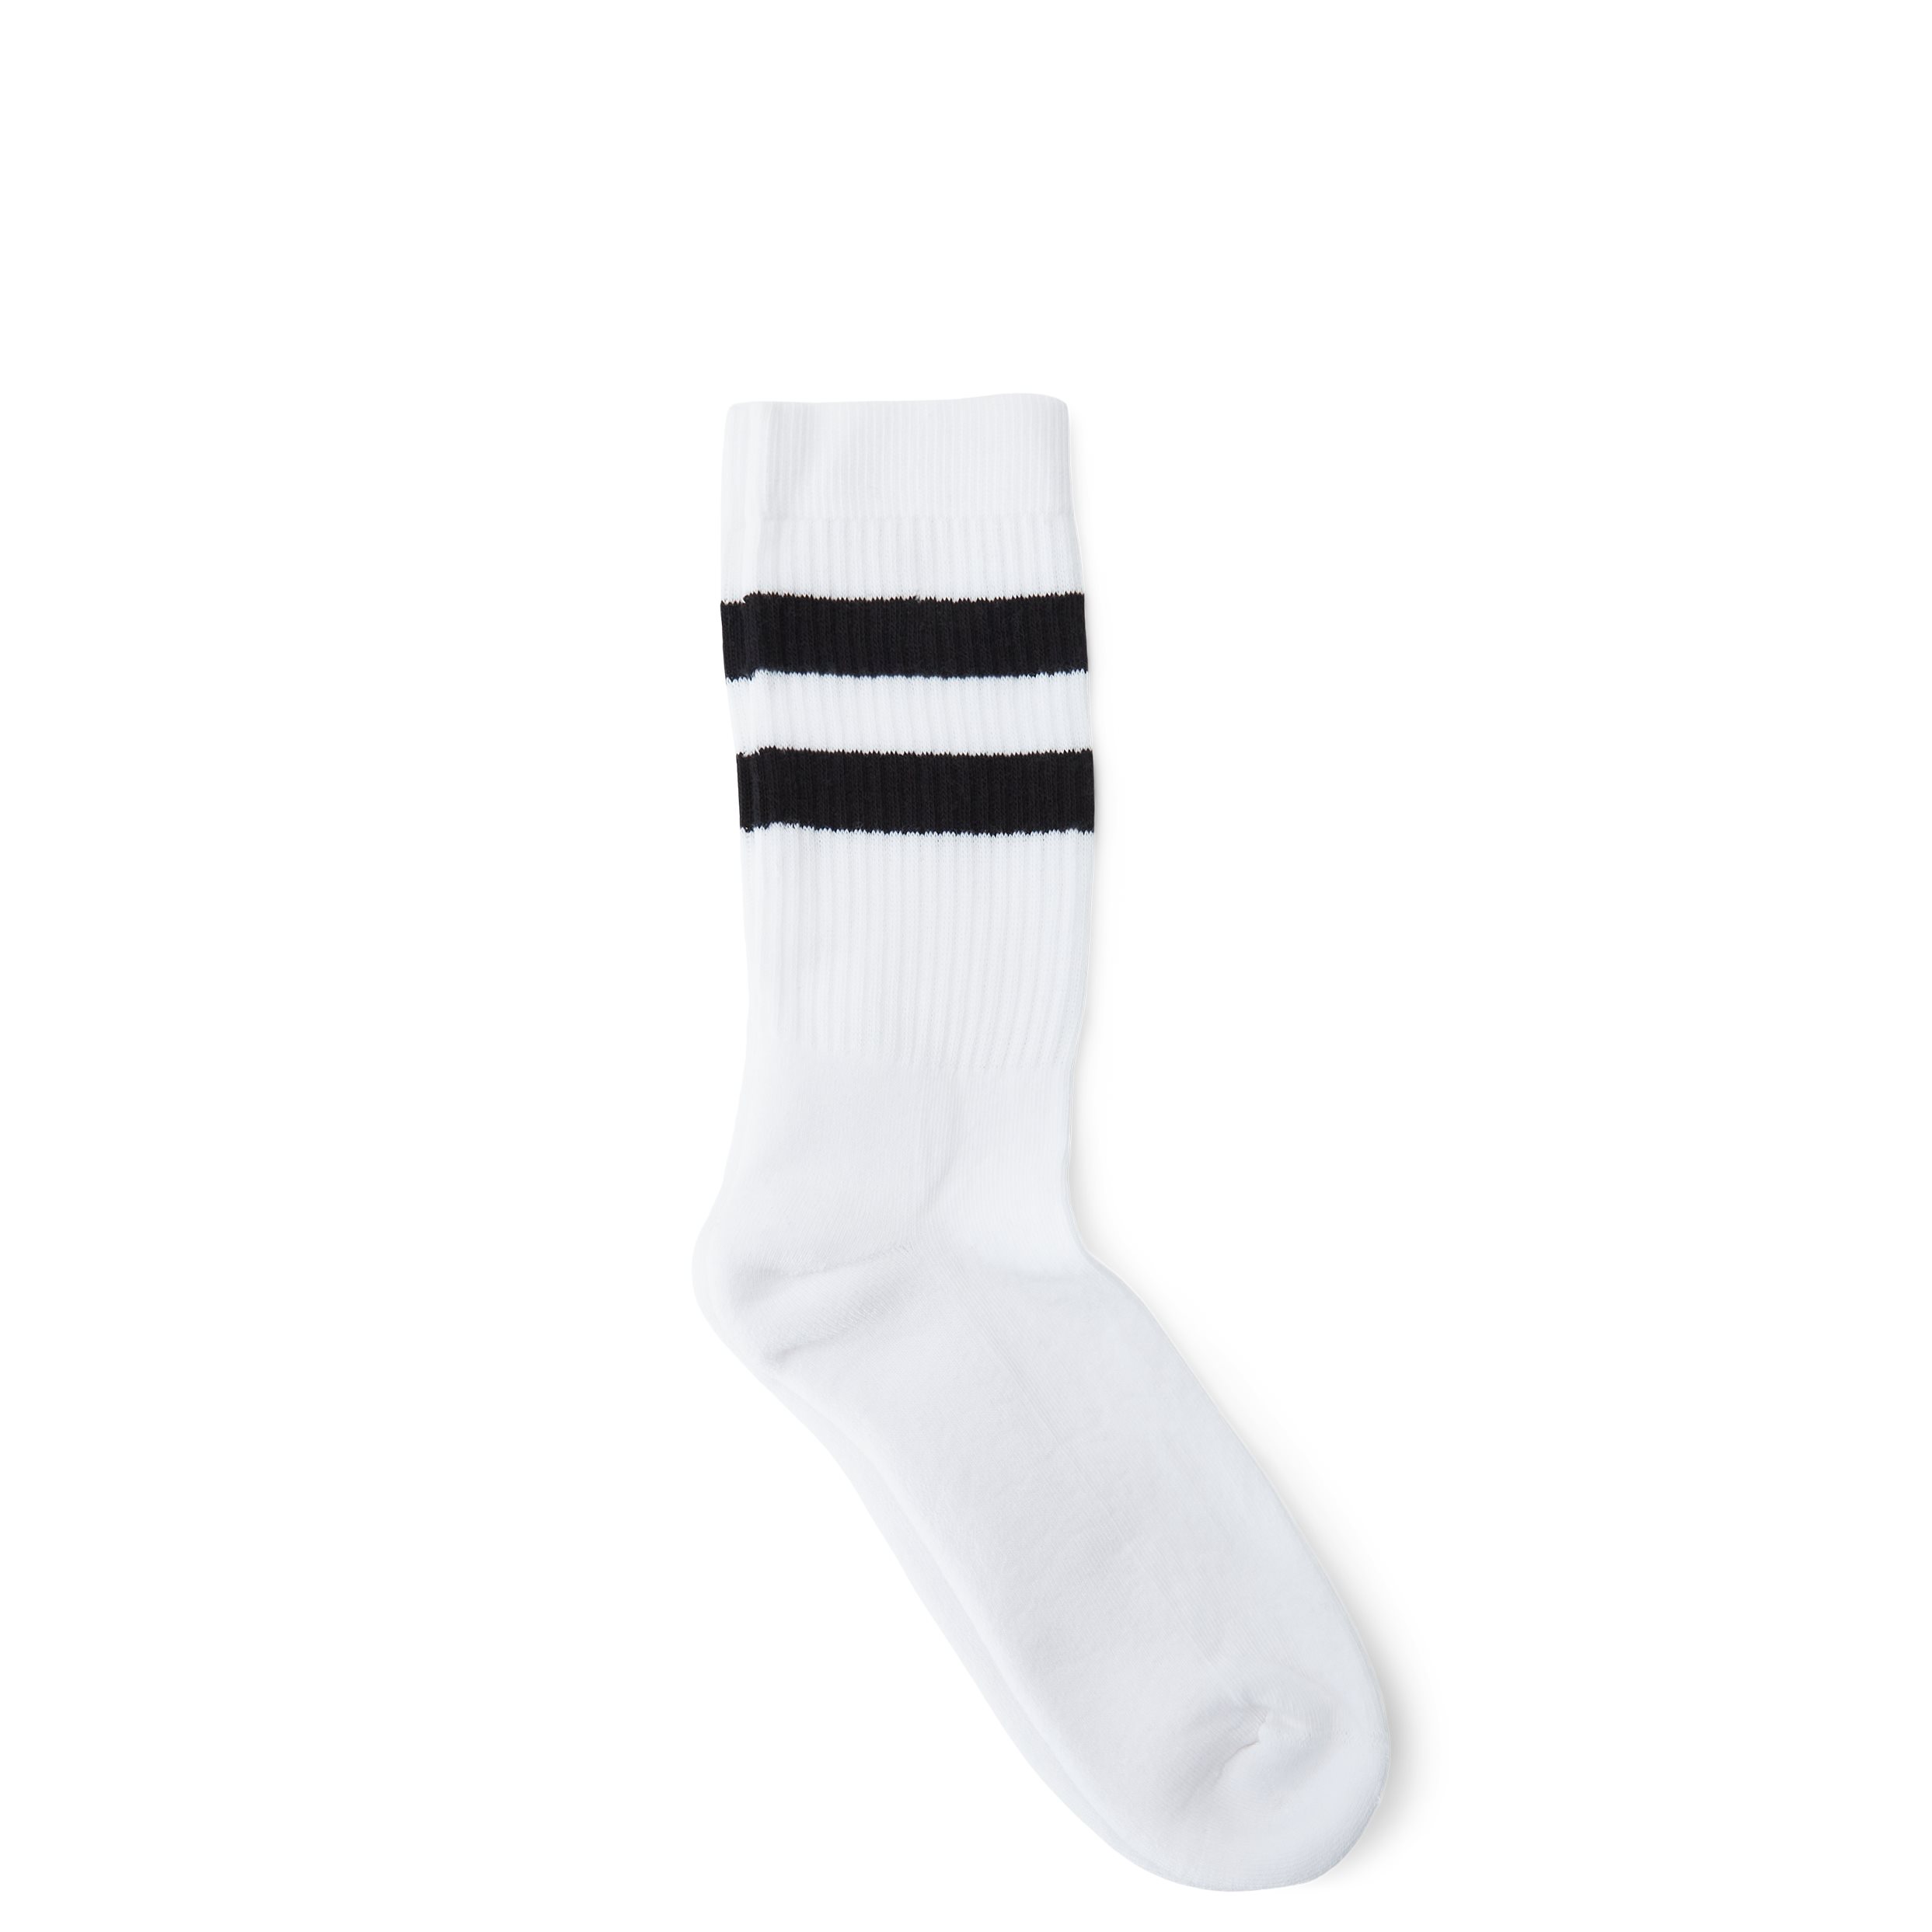 qUINT Socks TENNIS 115-12427 White